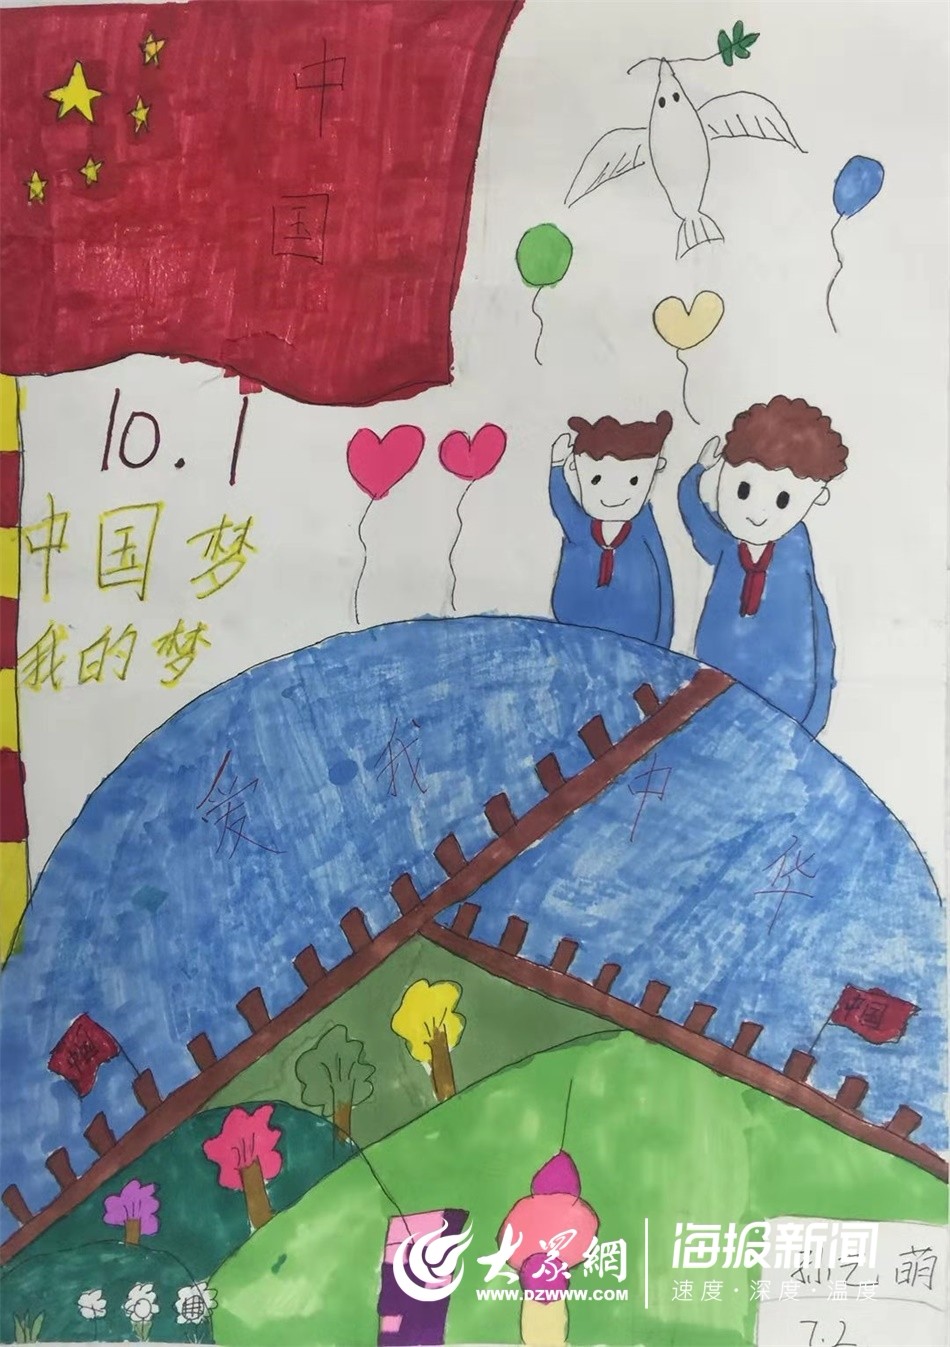 曹县一初北校区七年级一班学生孙艺萌作品《中国梦 我的梦》